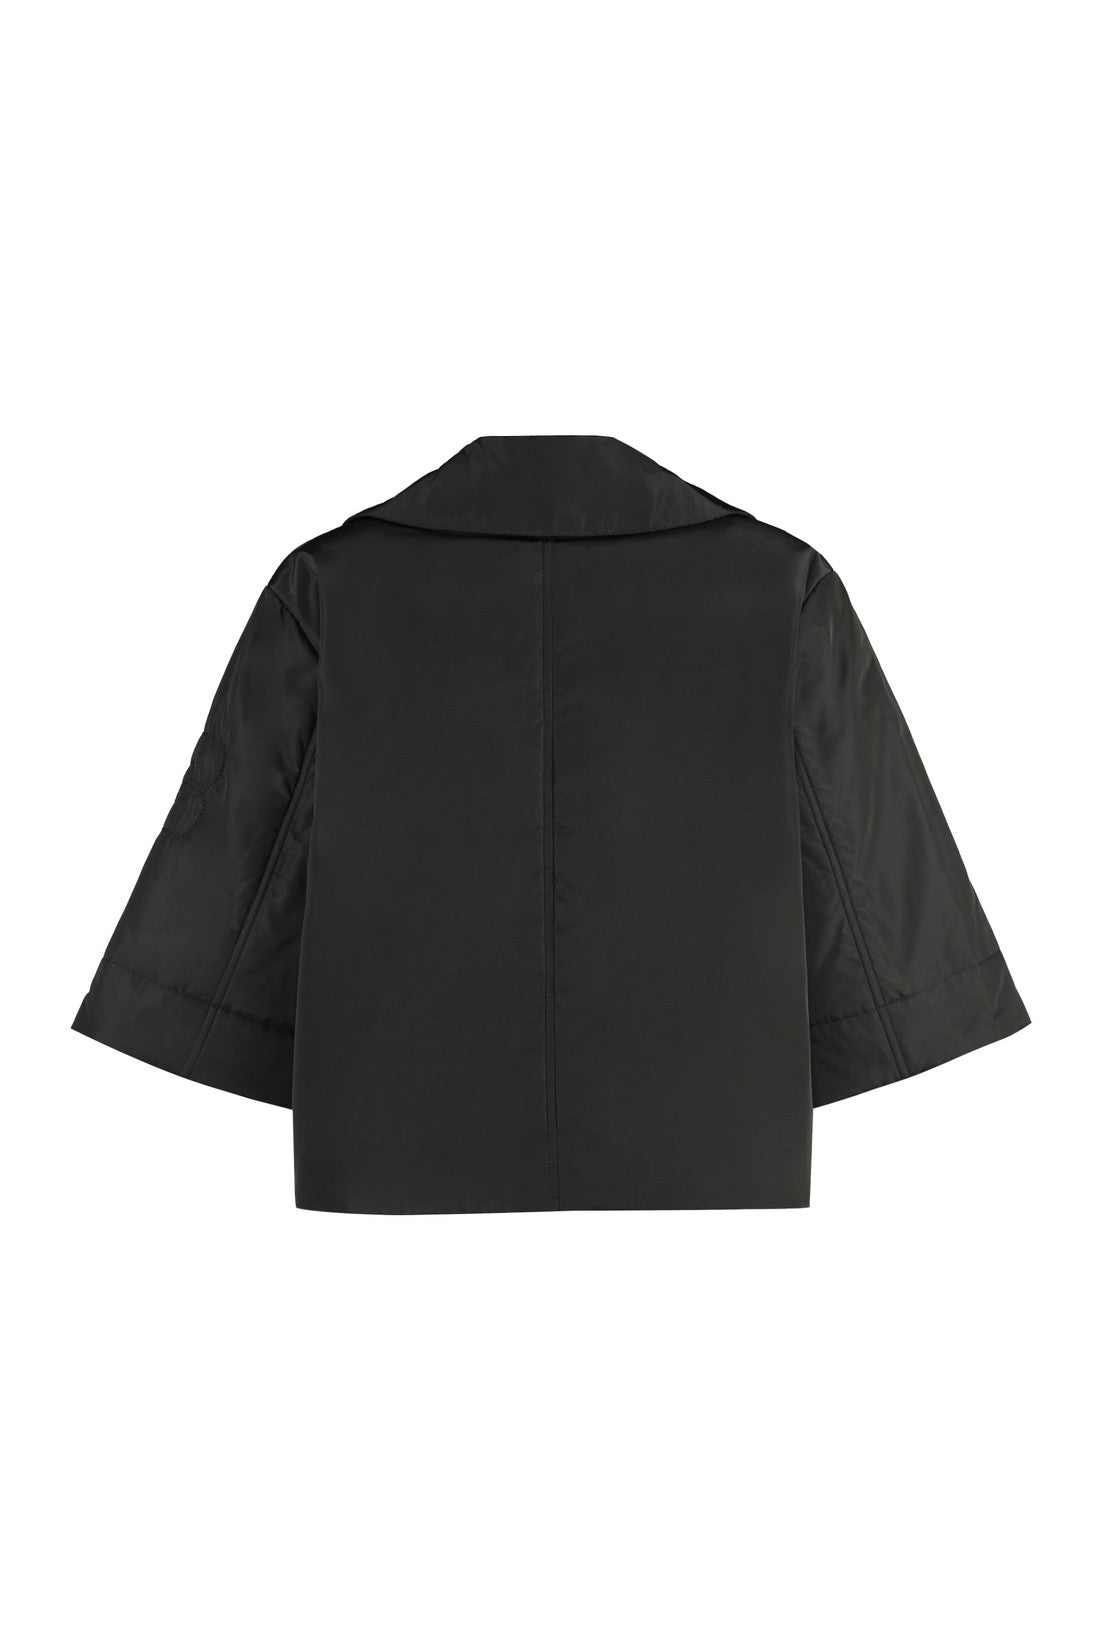 GANNI-OUTLET-SALE-Nylon jacket-ARCHIVIST